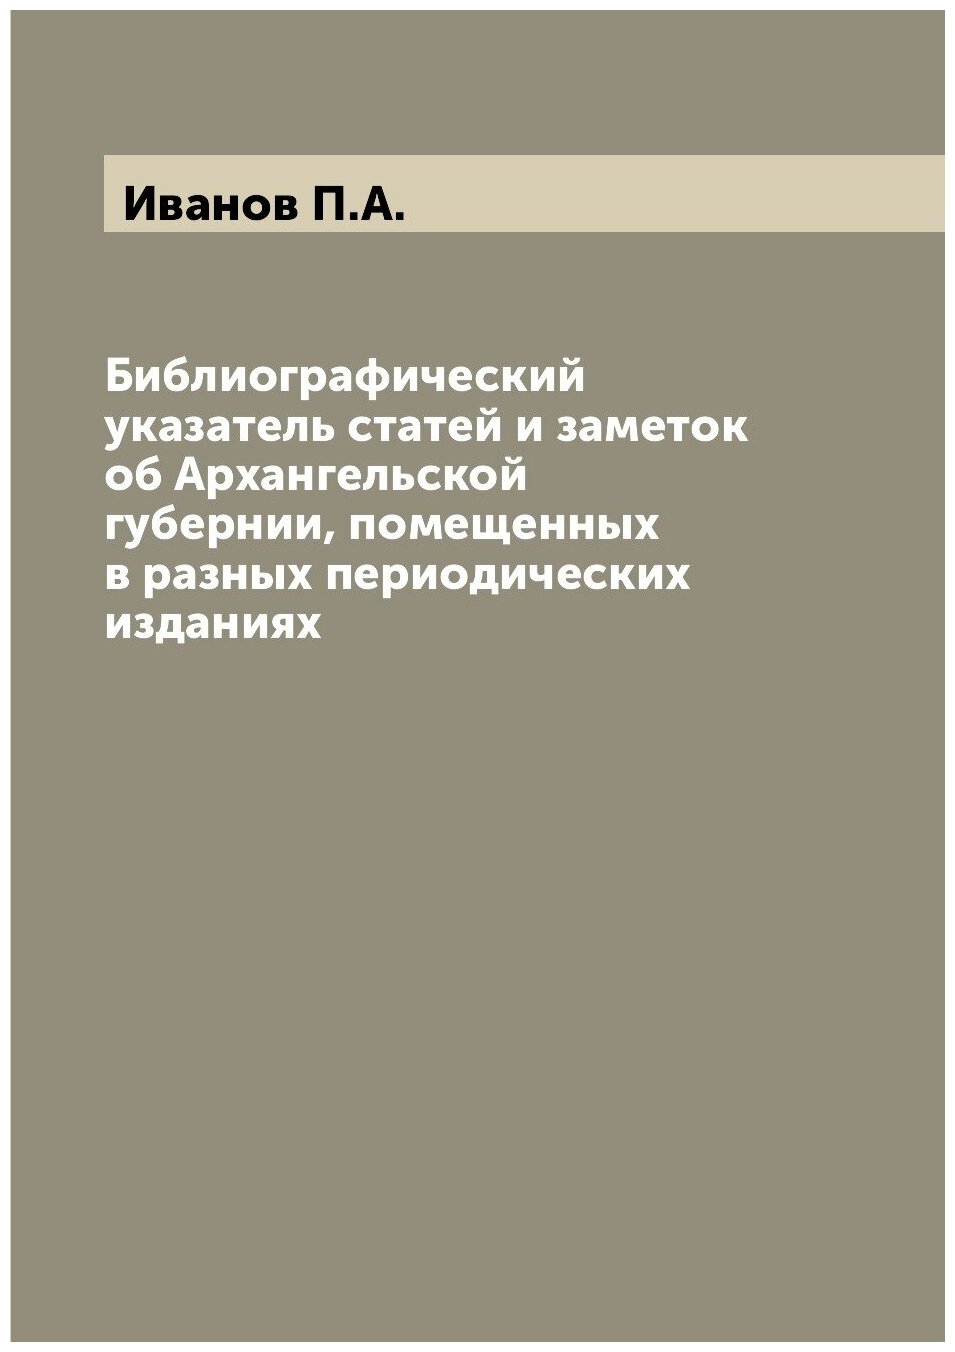 Библиографический указатель статей и заметок об Архангельской губернии, помещенных в разных периодических изданиях